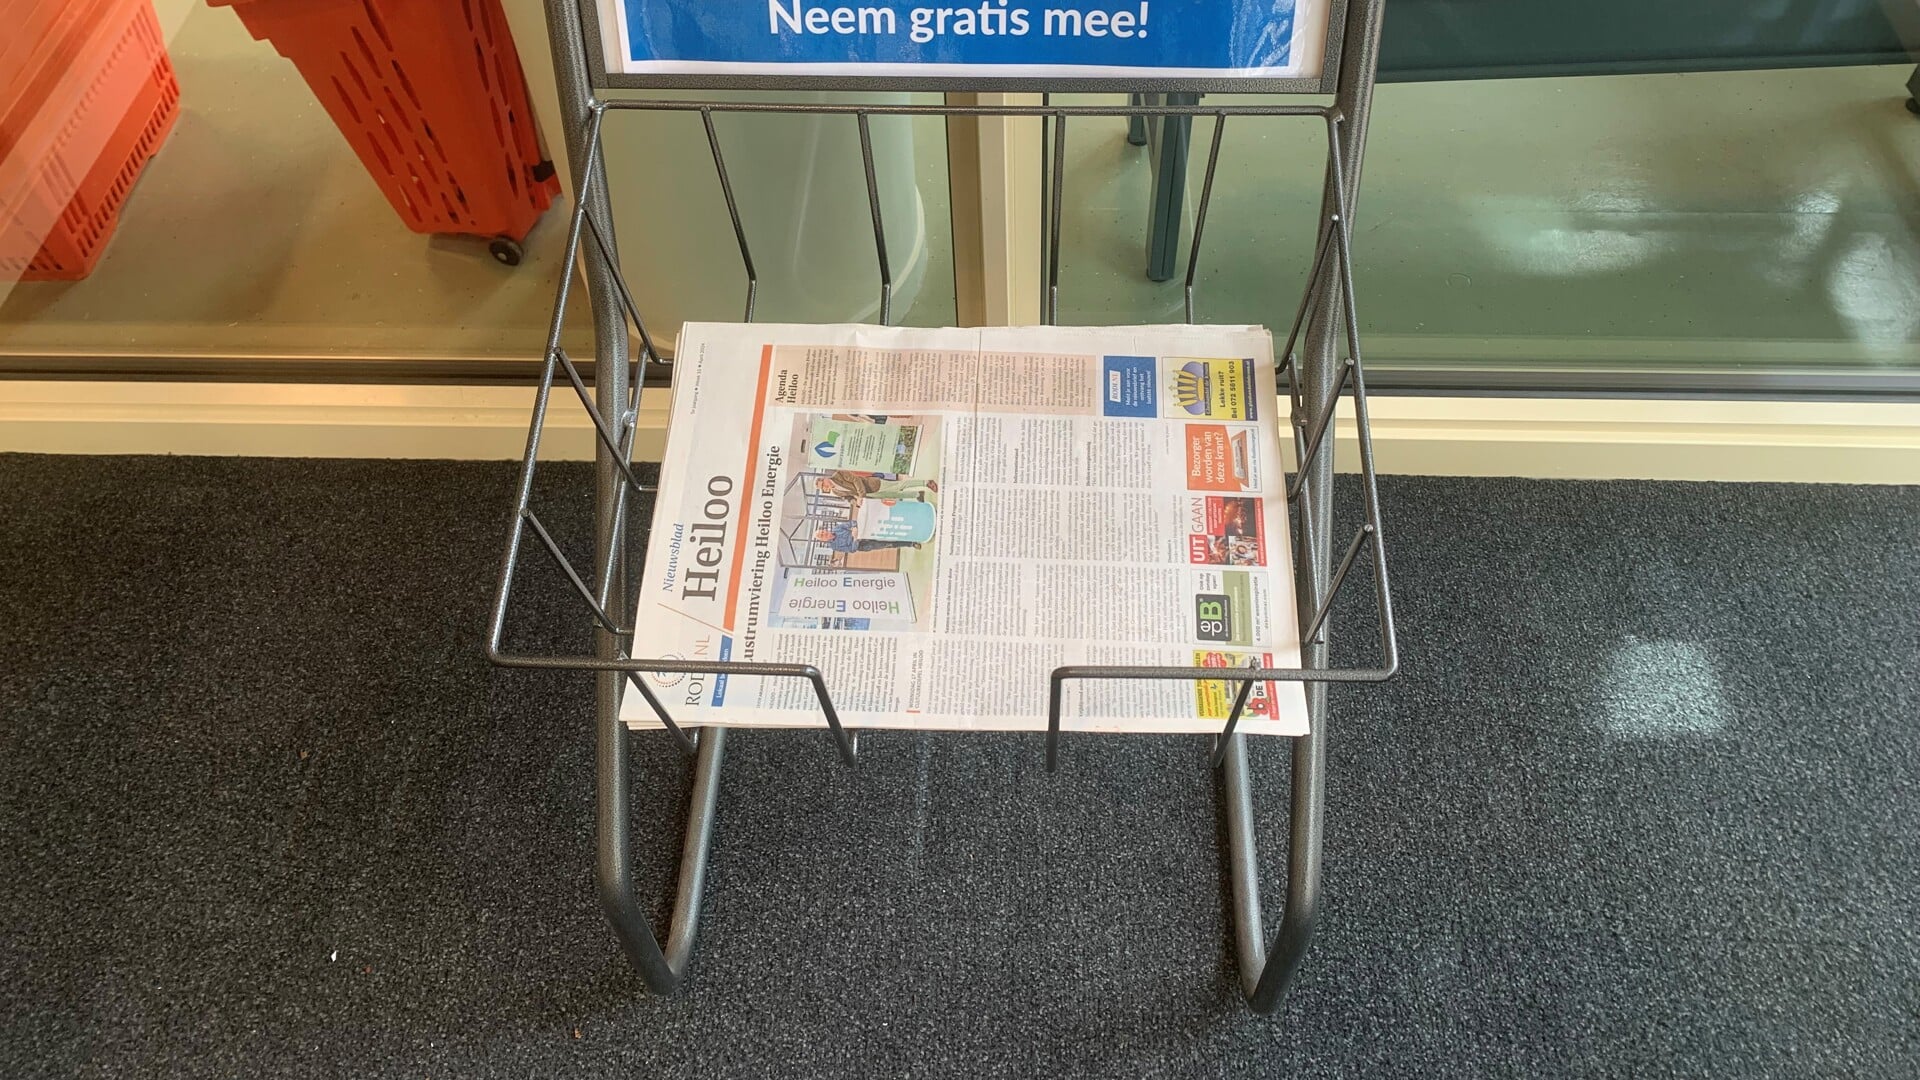 Nieuwsblad Heiloo is her en der mee te nemen.